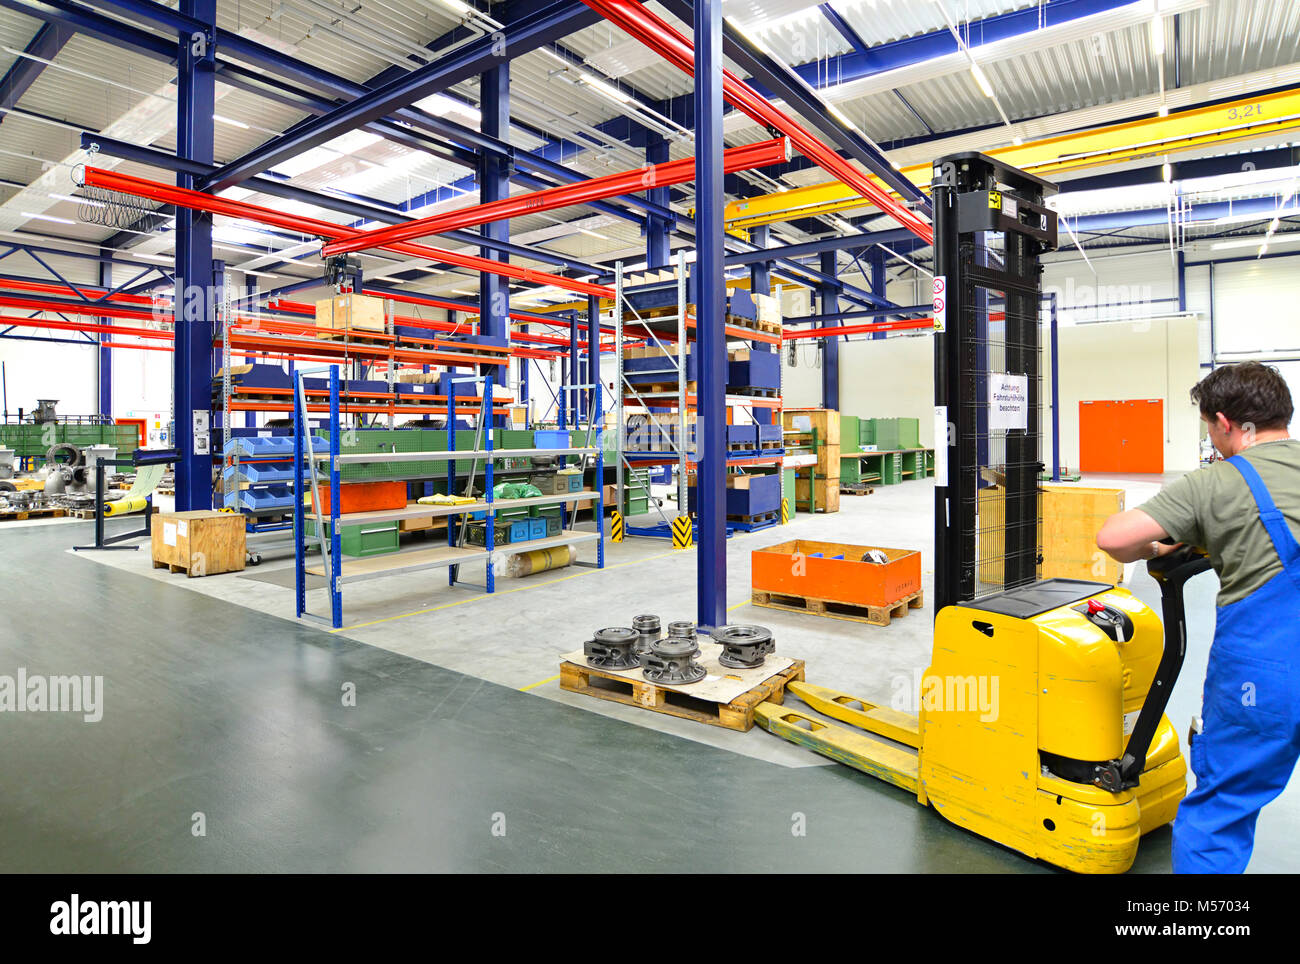 Stapler Arbeiter in einer Fabrik - Herstellung der Maschinen und Lagerung - Ausstattung und Einrichtung Industriehalle Stockfoto